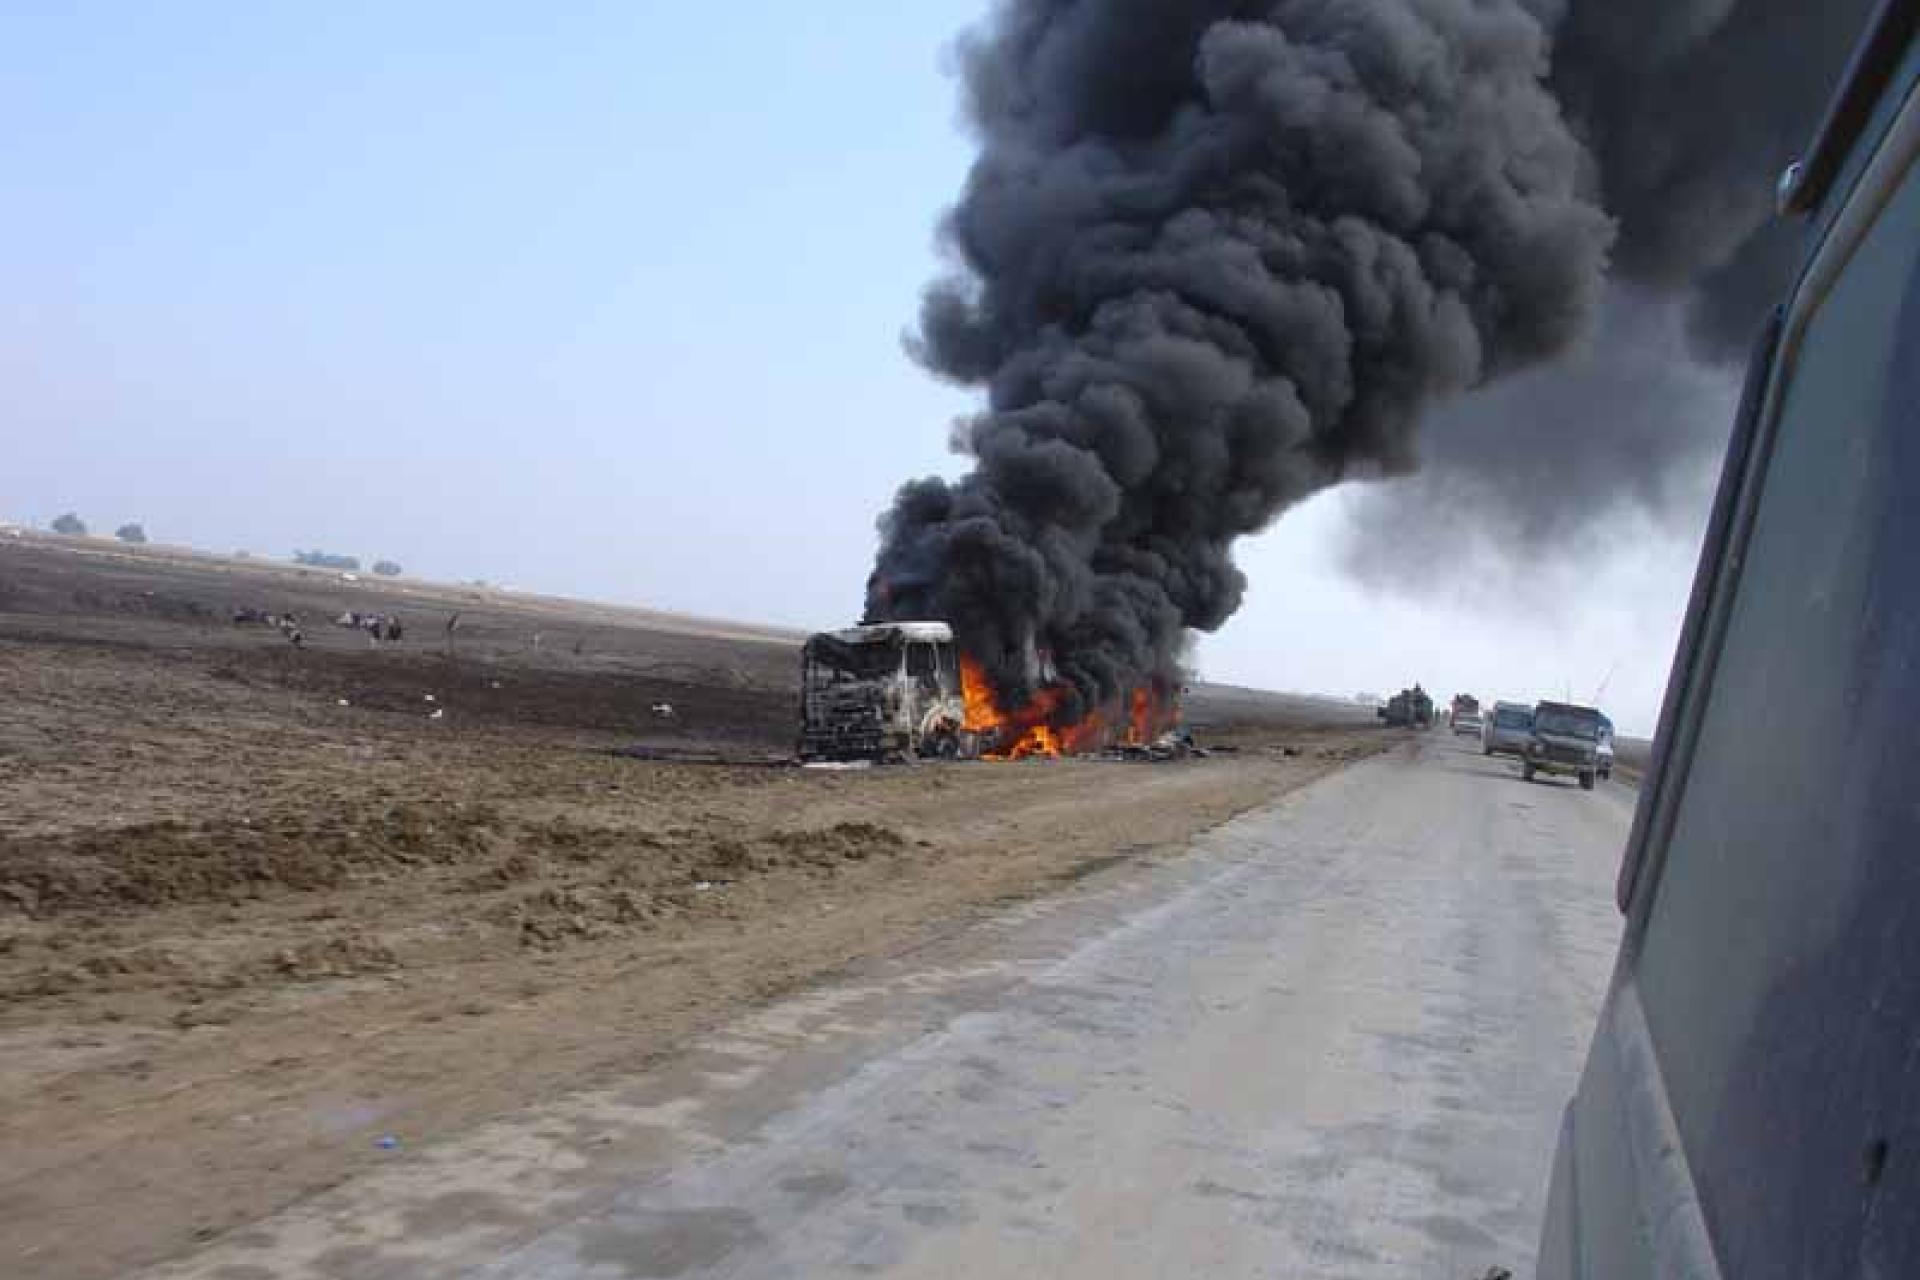 Militair voertuig staat in brand naast de weg in Irak